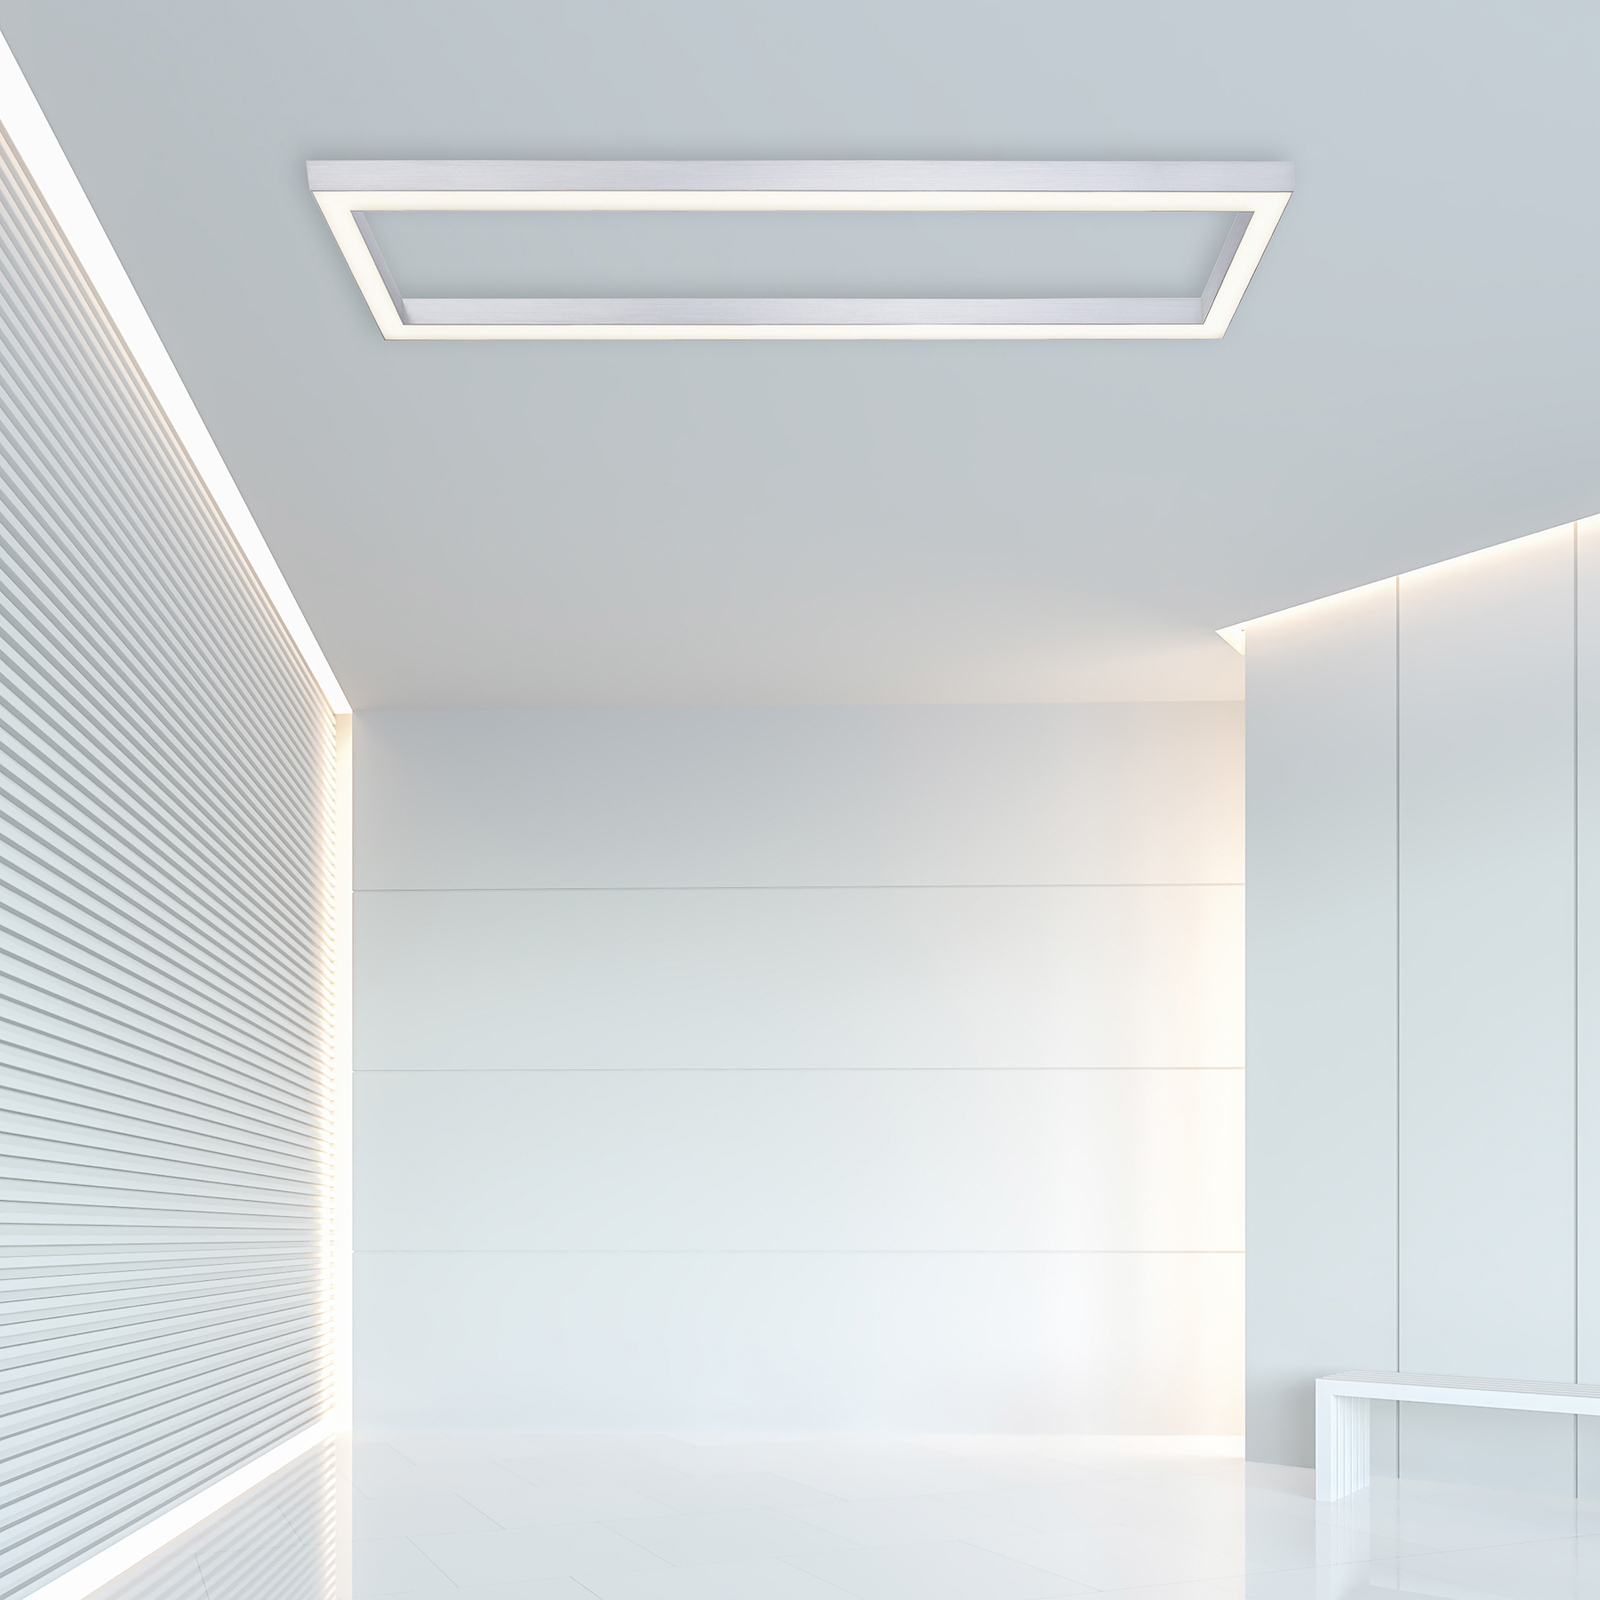 Pure Lines LED plafondlamp, hoekig, aluminium